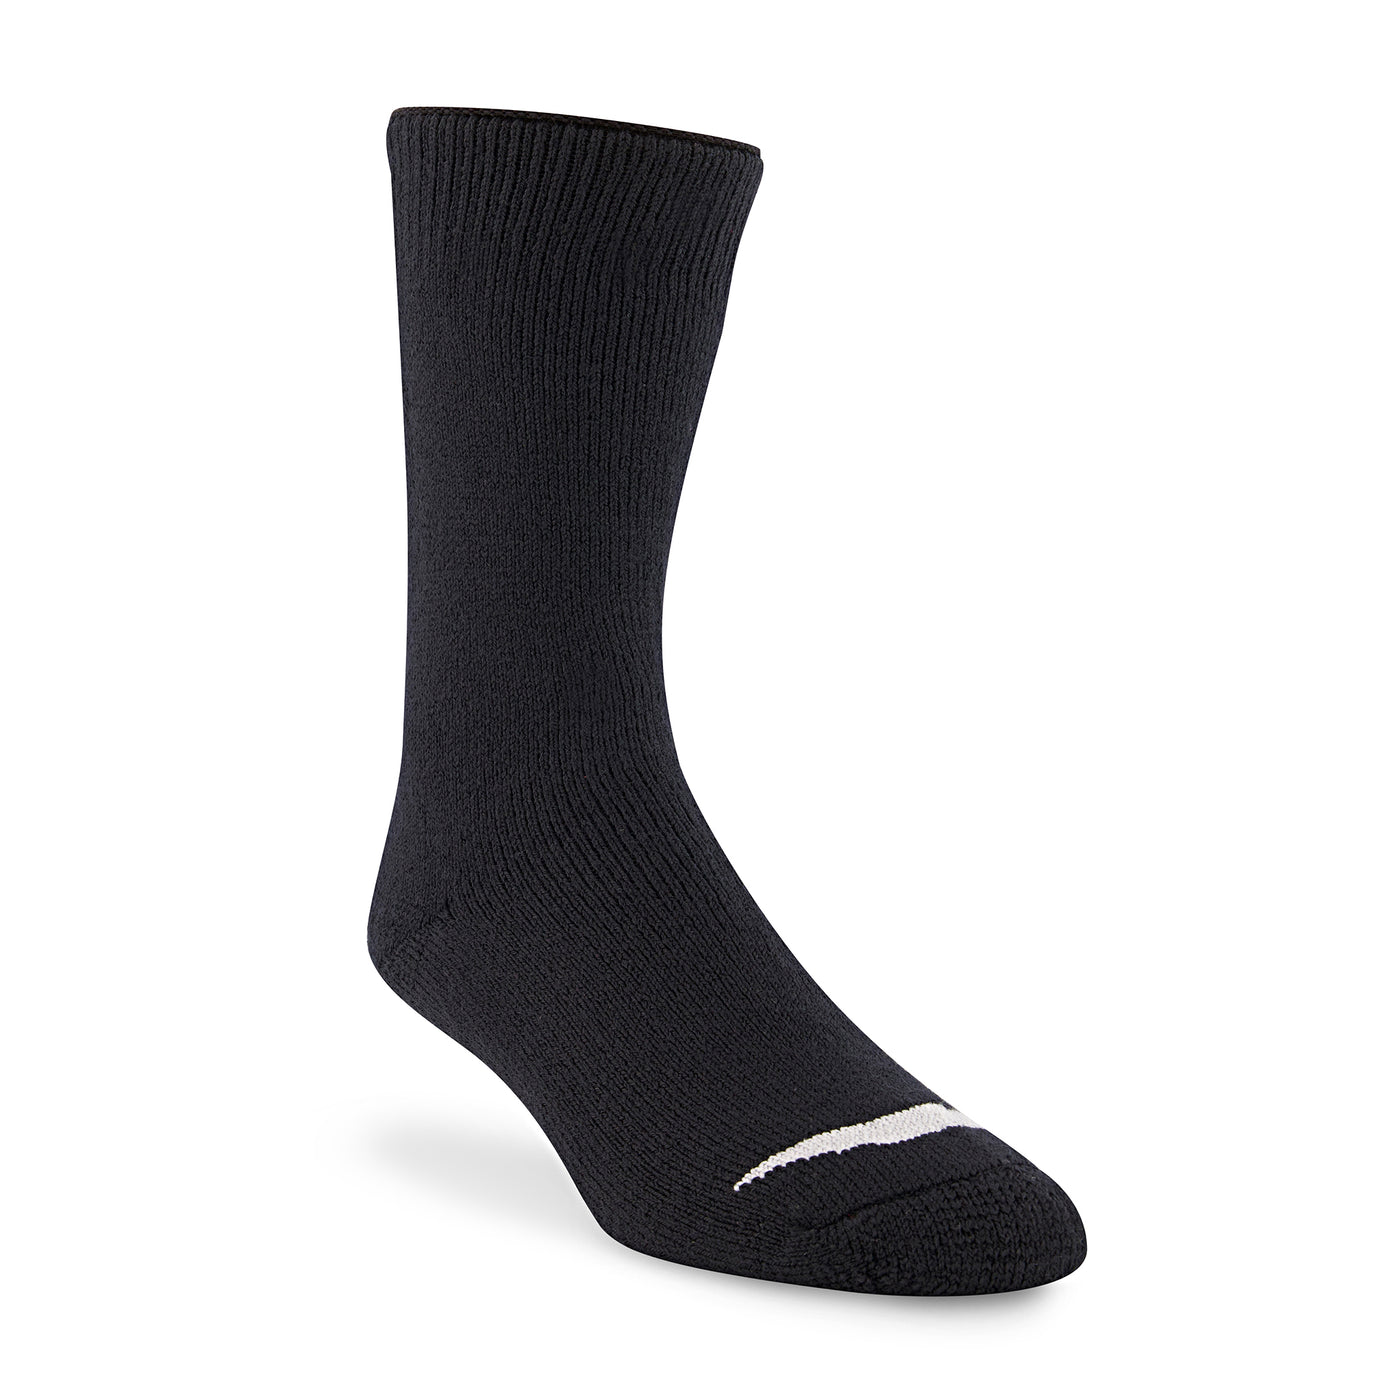 Black Merino Wool Thermal Socks